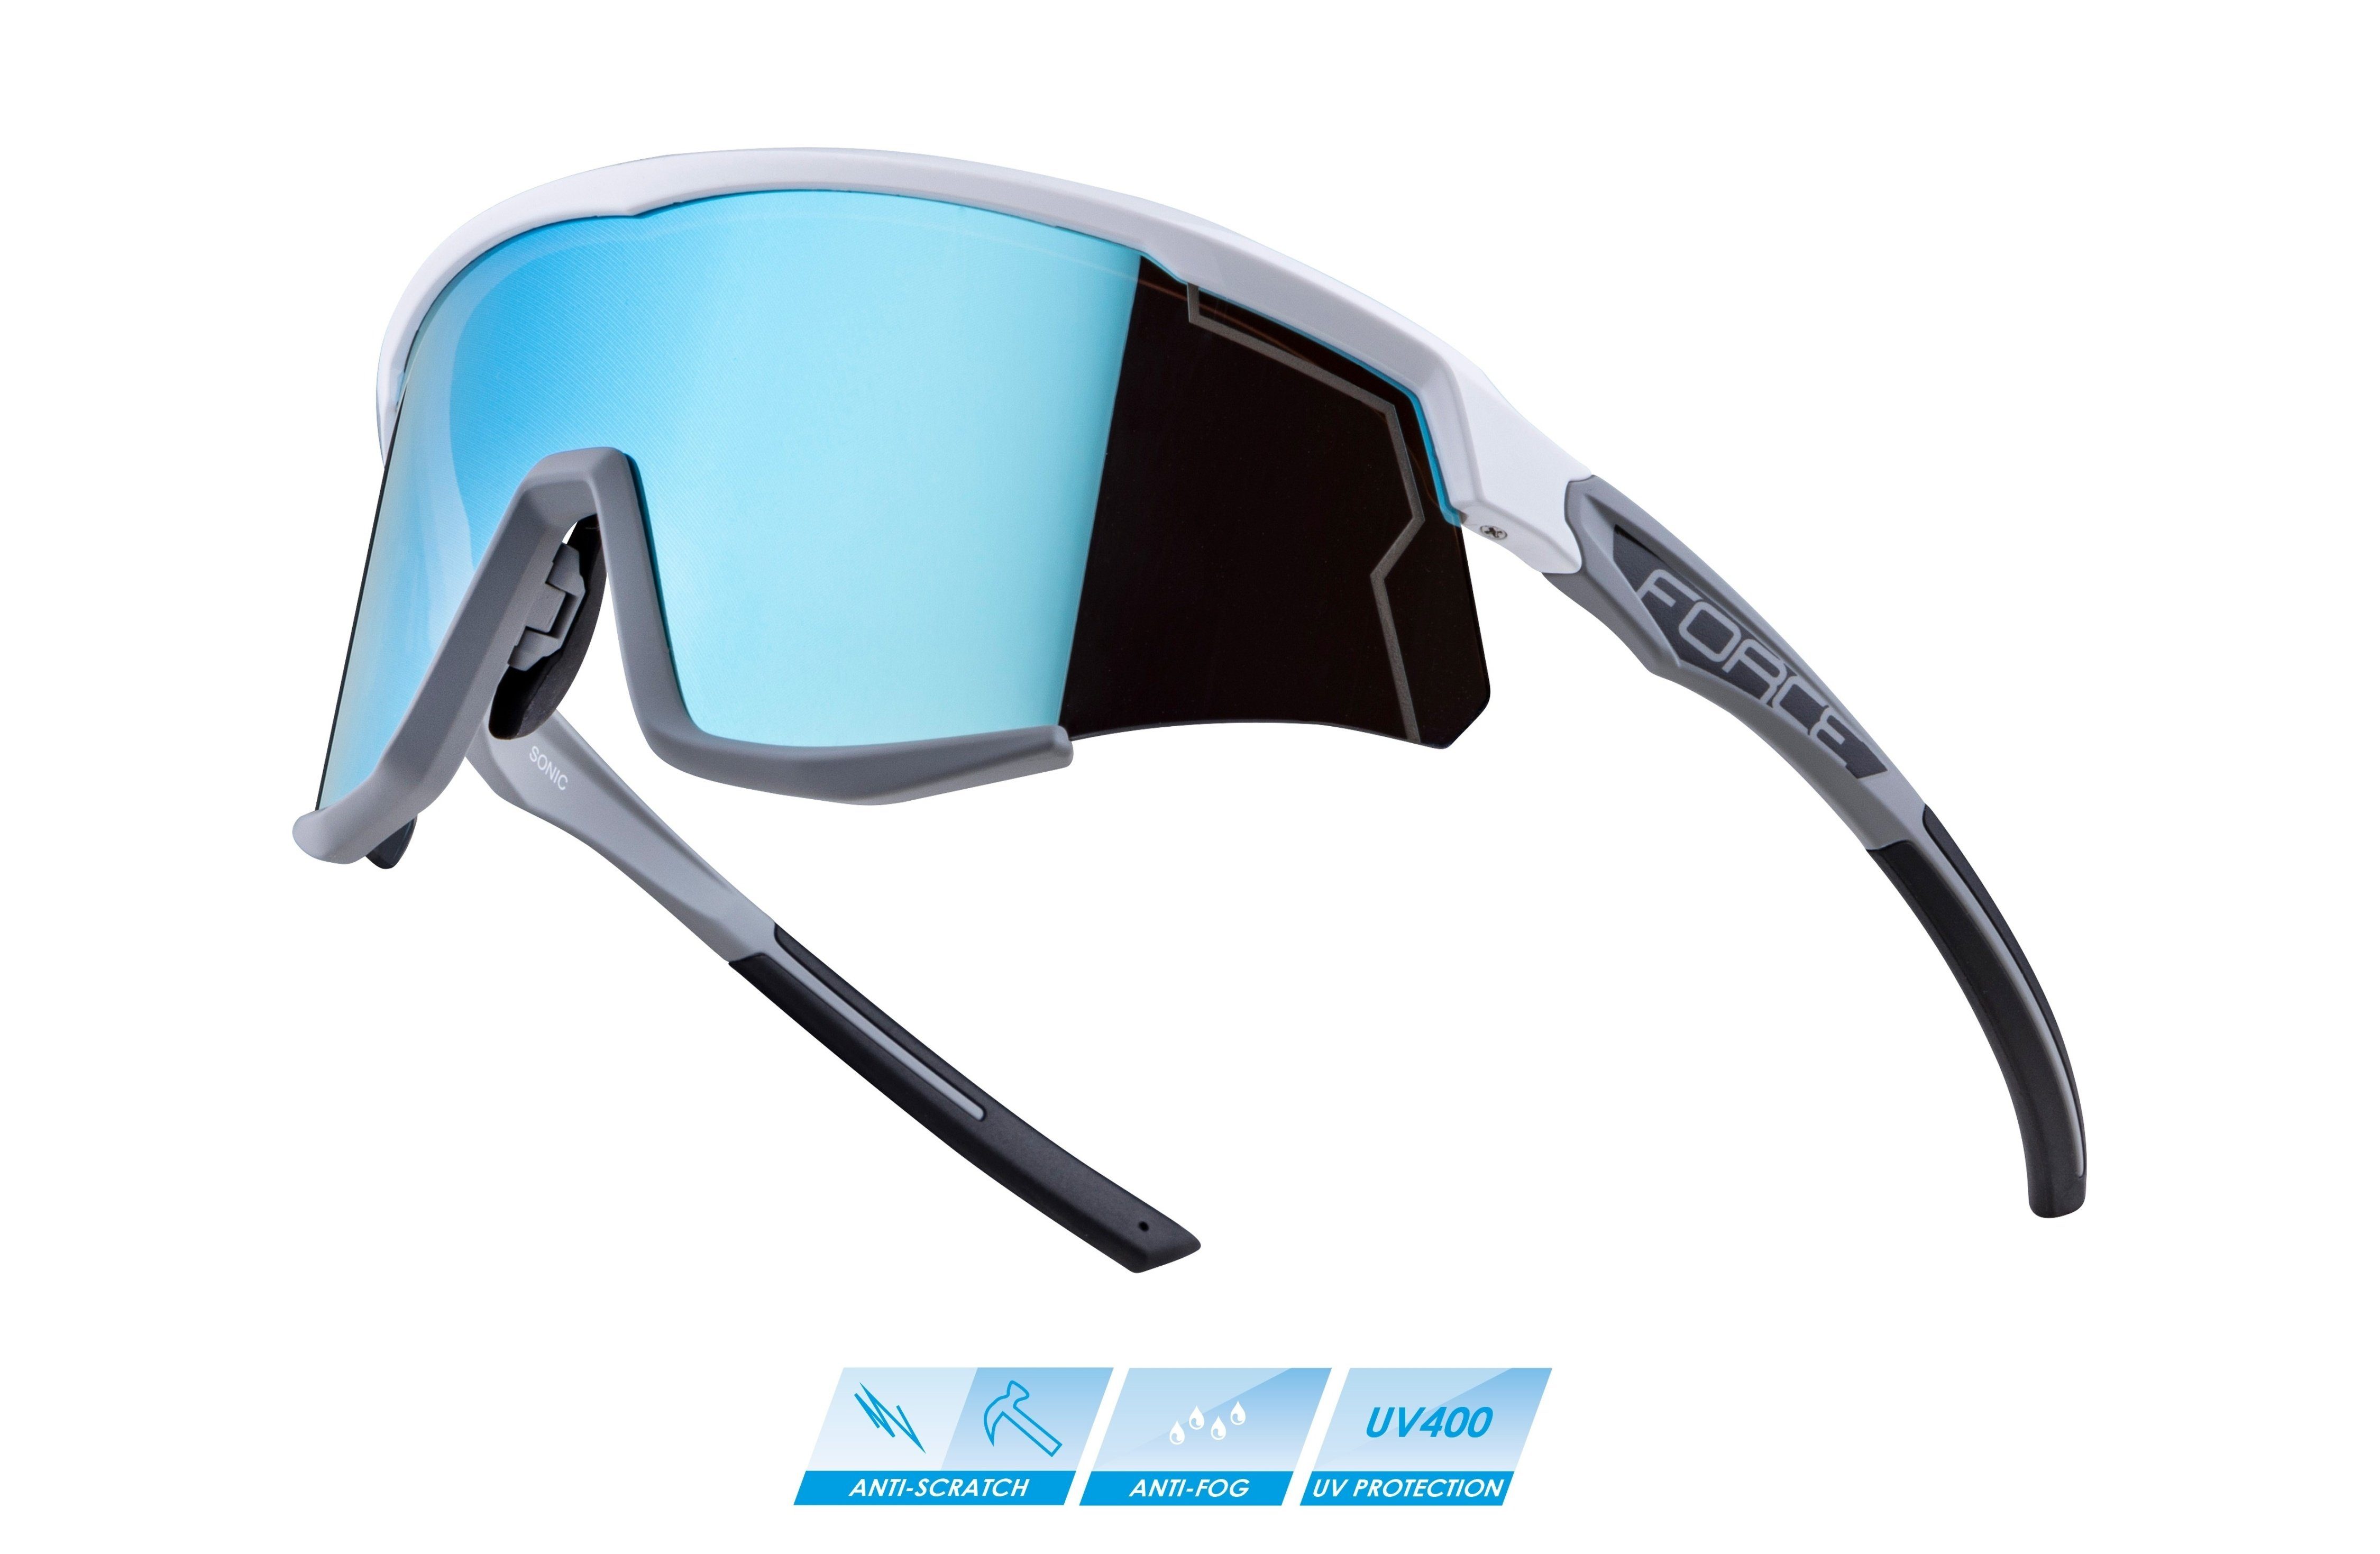 SONIC weiß-grau blau Fahrradbrille Sonnenbrille Scheibe verspiegelte FORCE FORCE